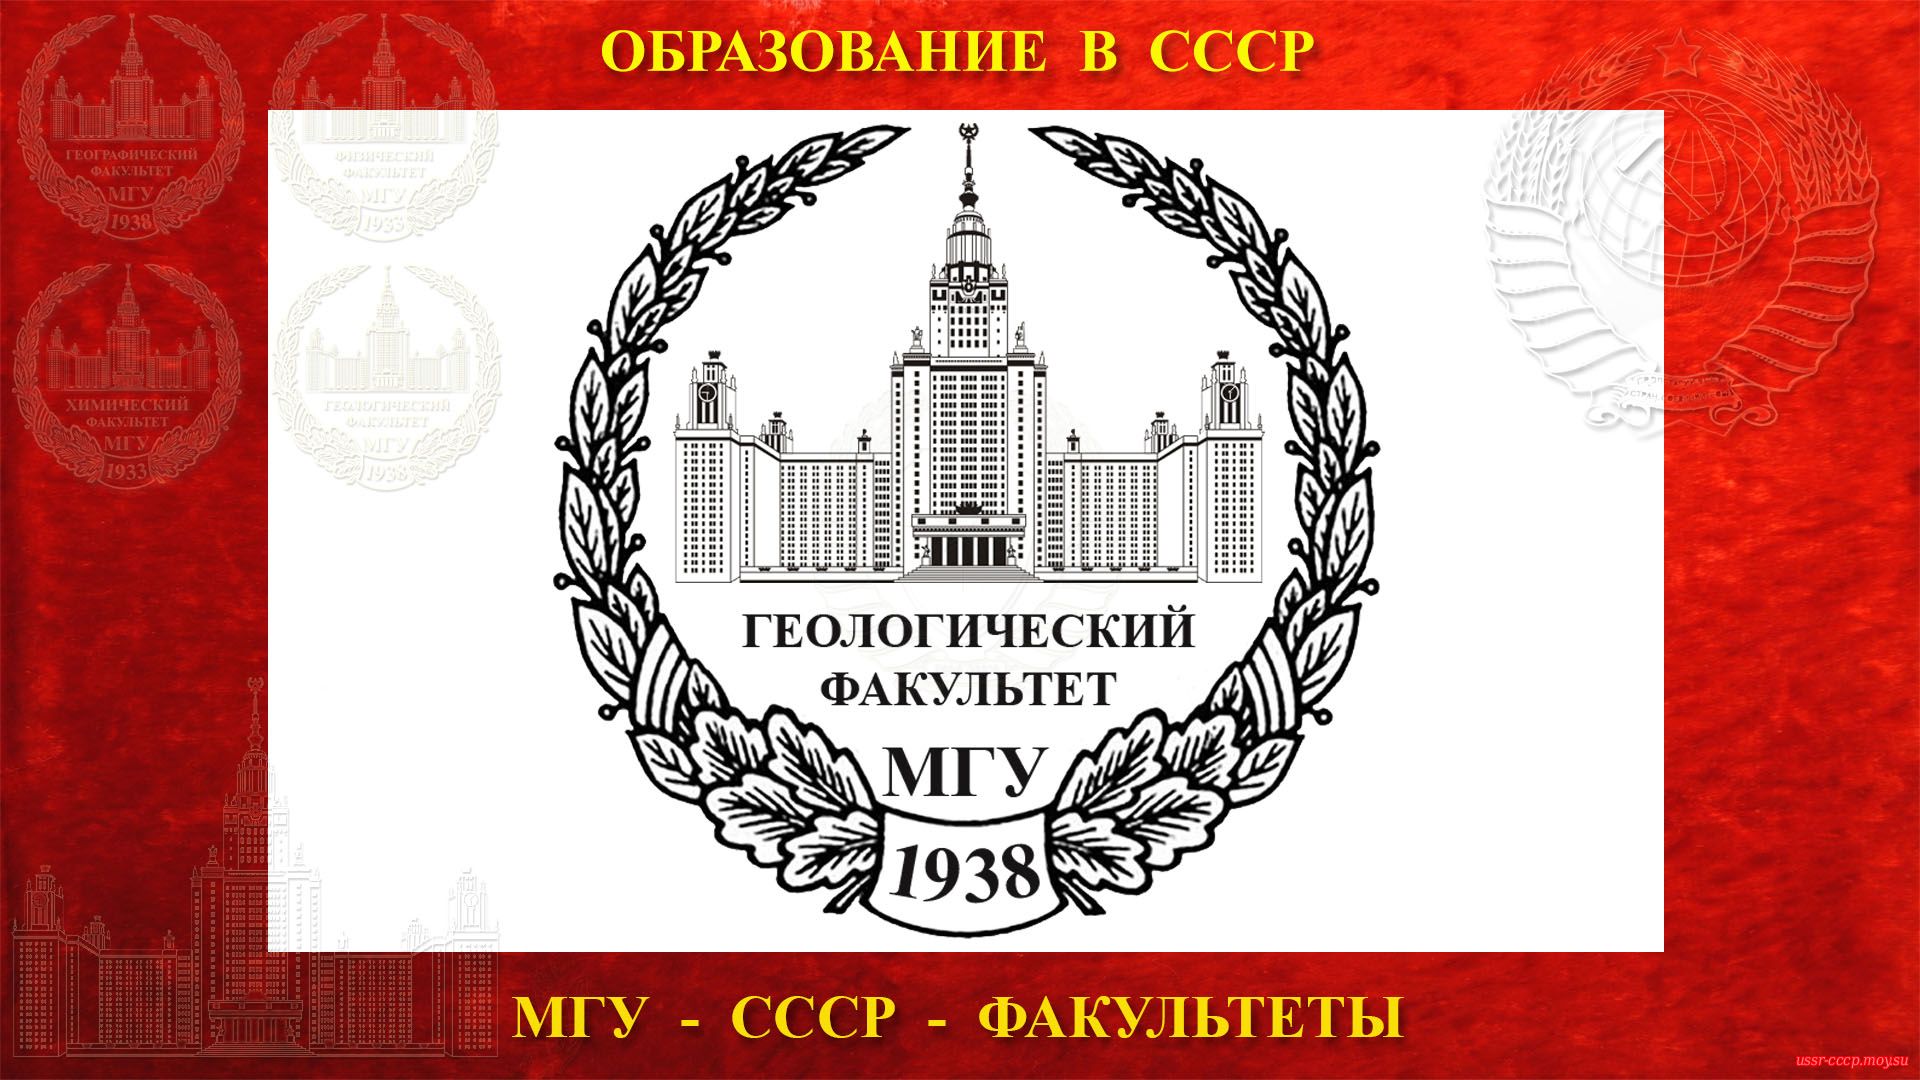 Геологический факультет МГУ — (23.07.1938) полное повествование))